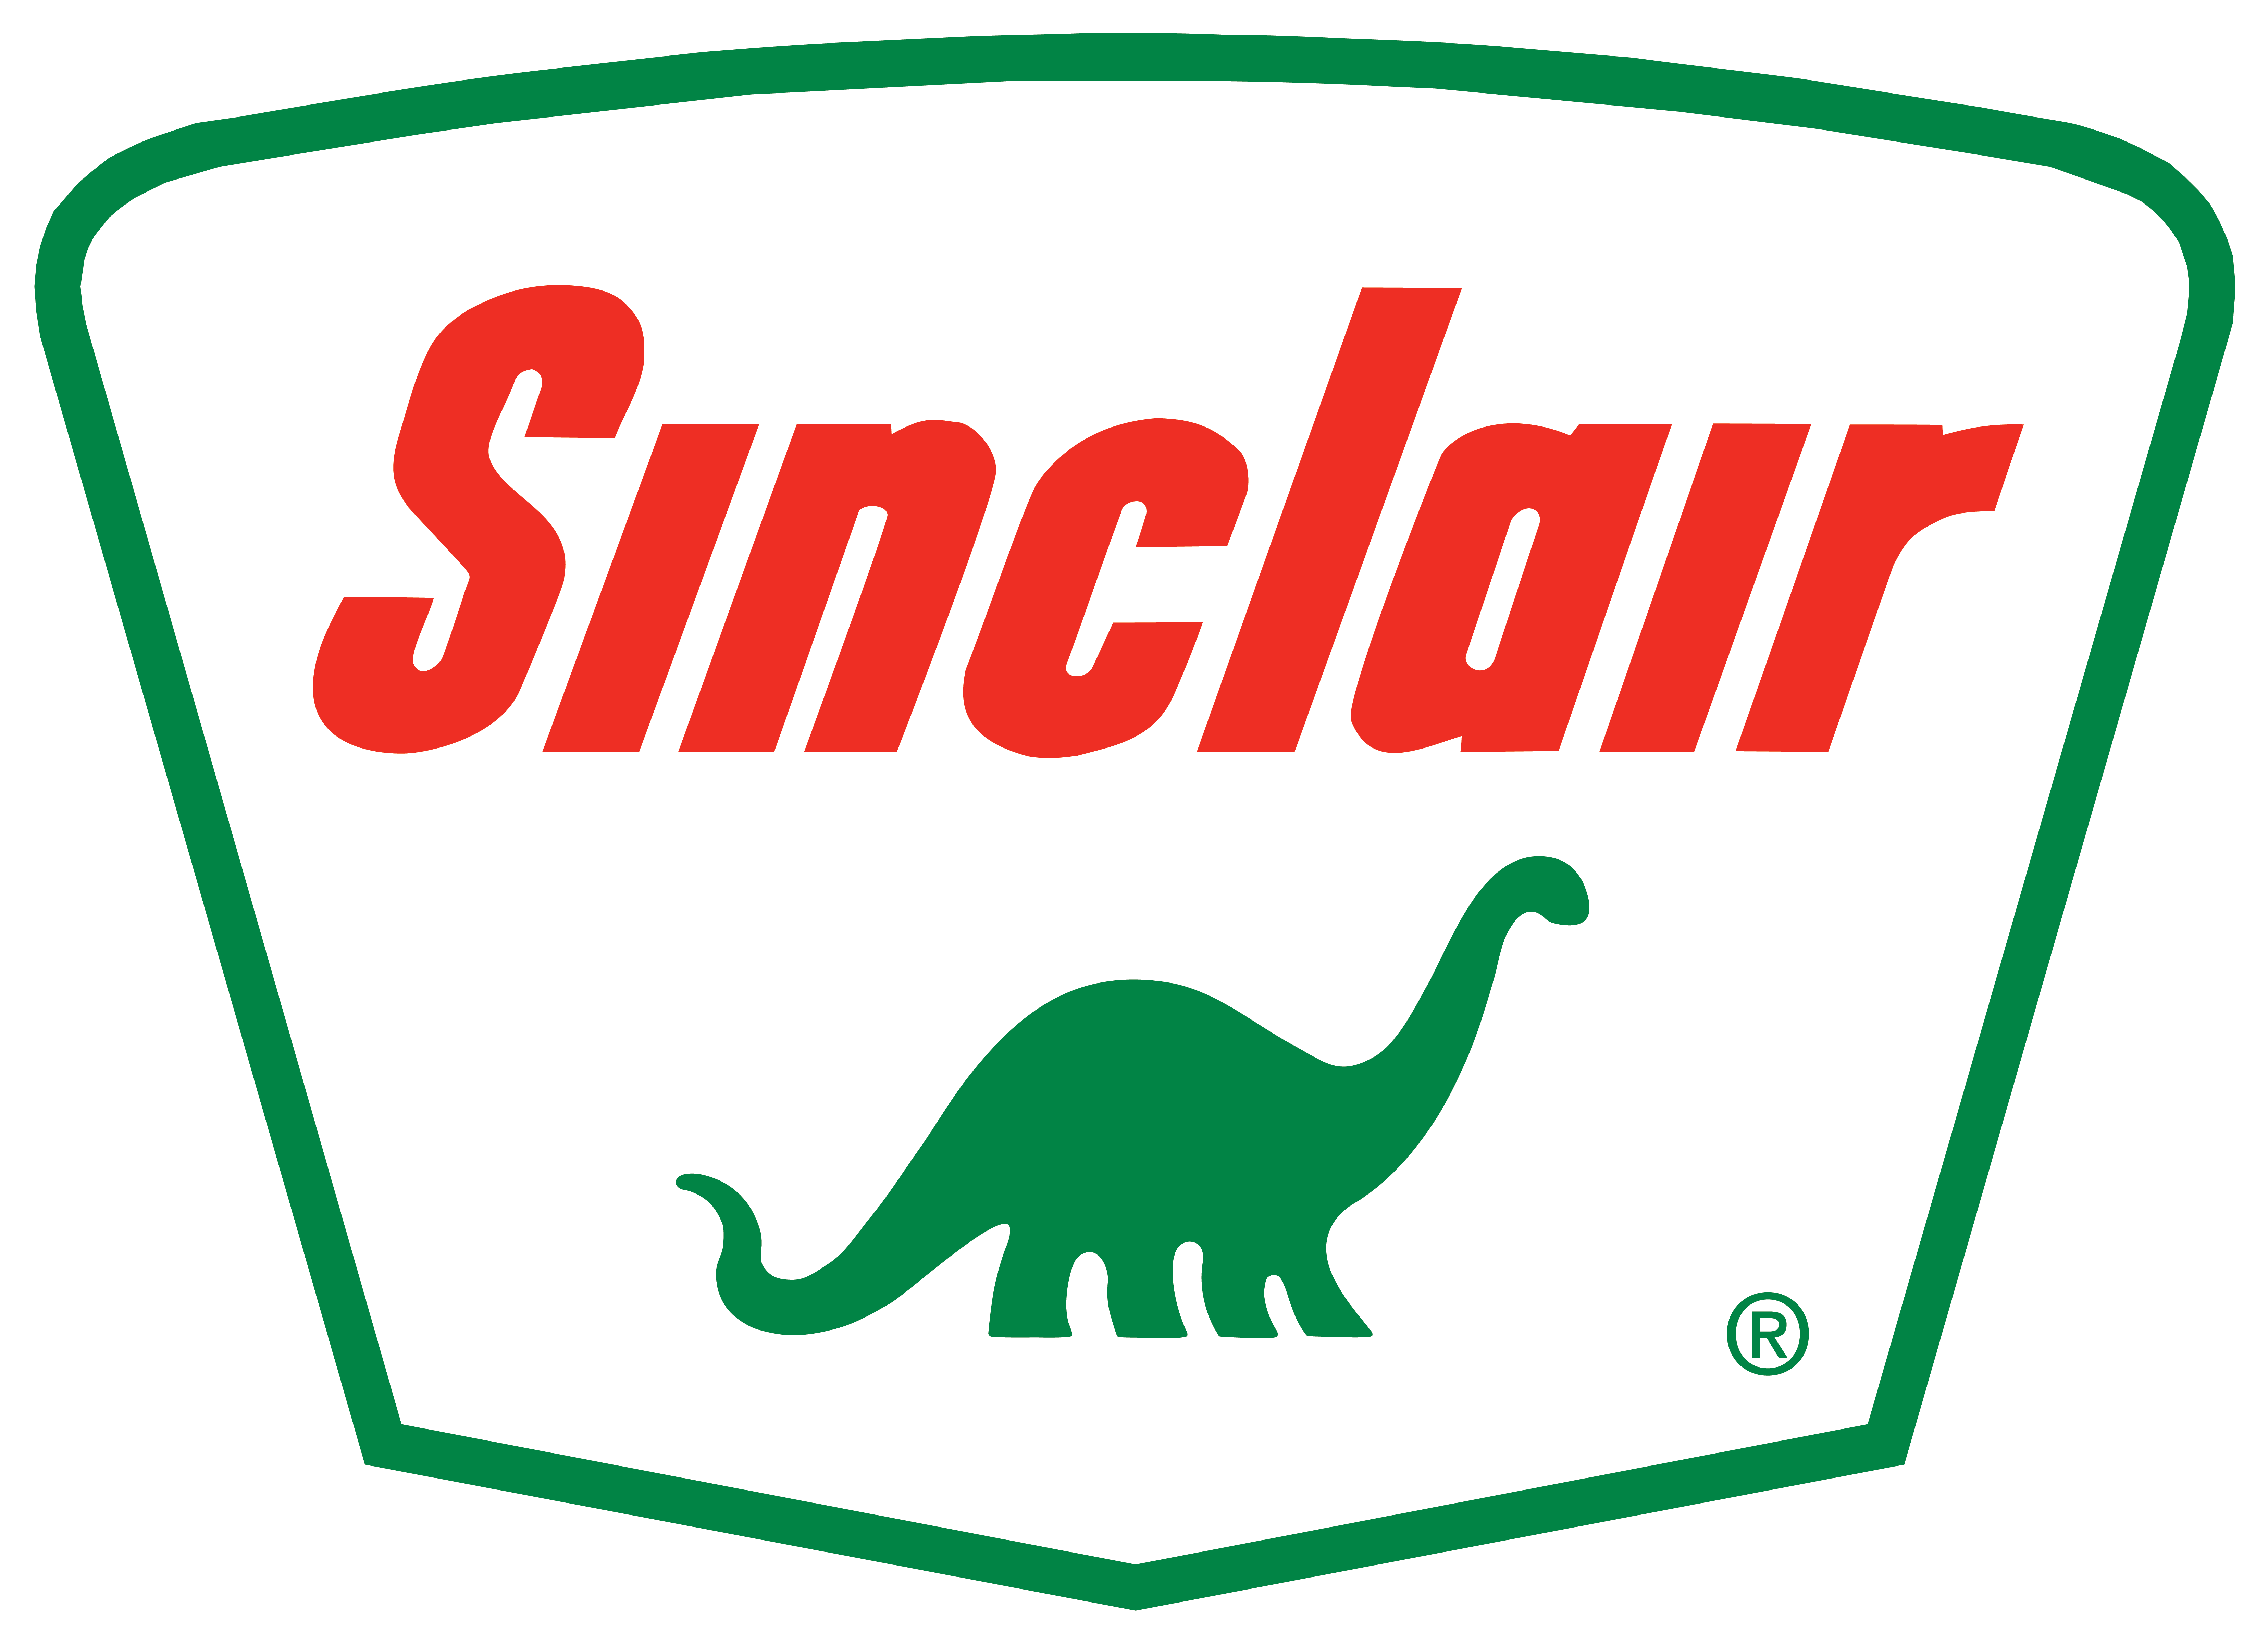 HF Sinclair (formally Sinclair Oil)